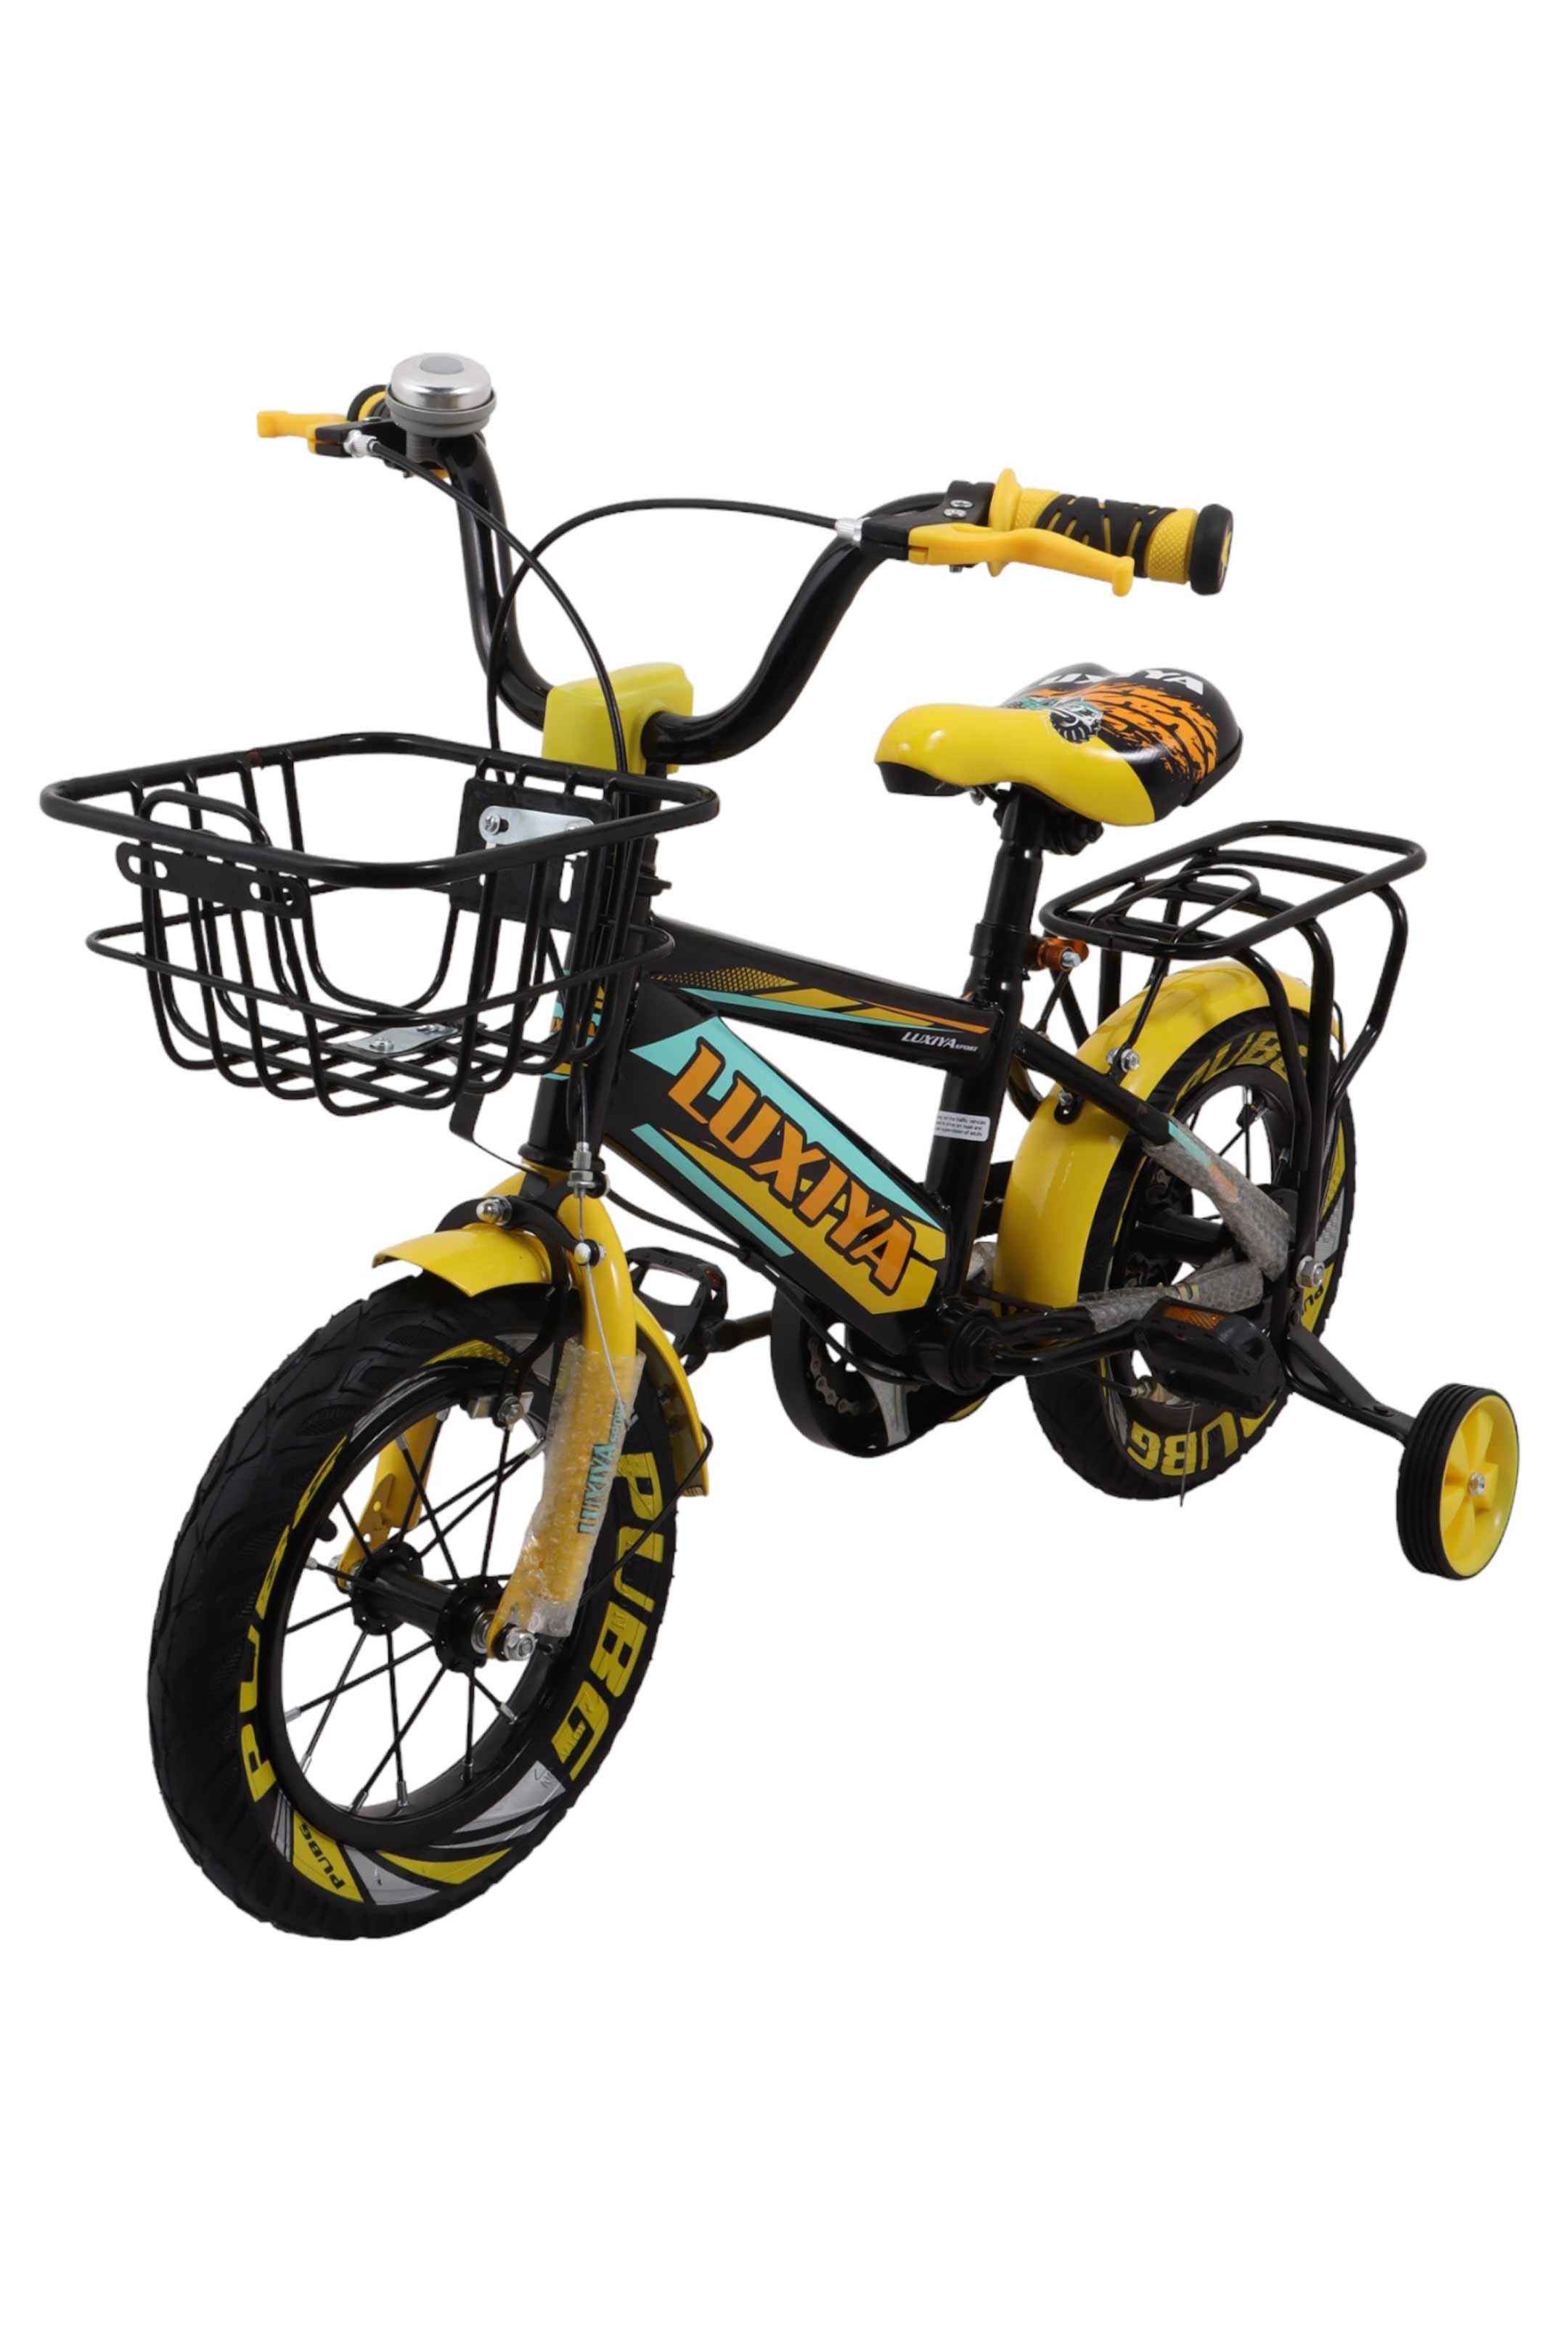 Bocina Allkar para bicicleta infantil, color amarillo